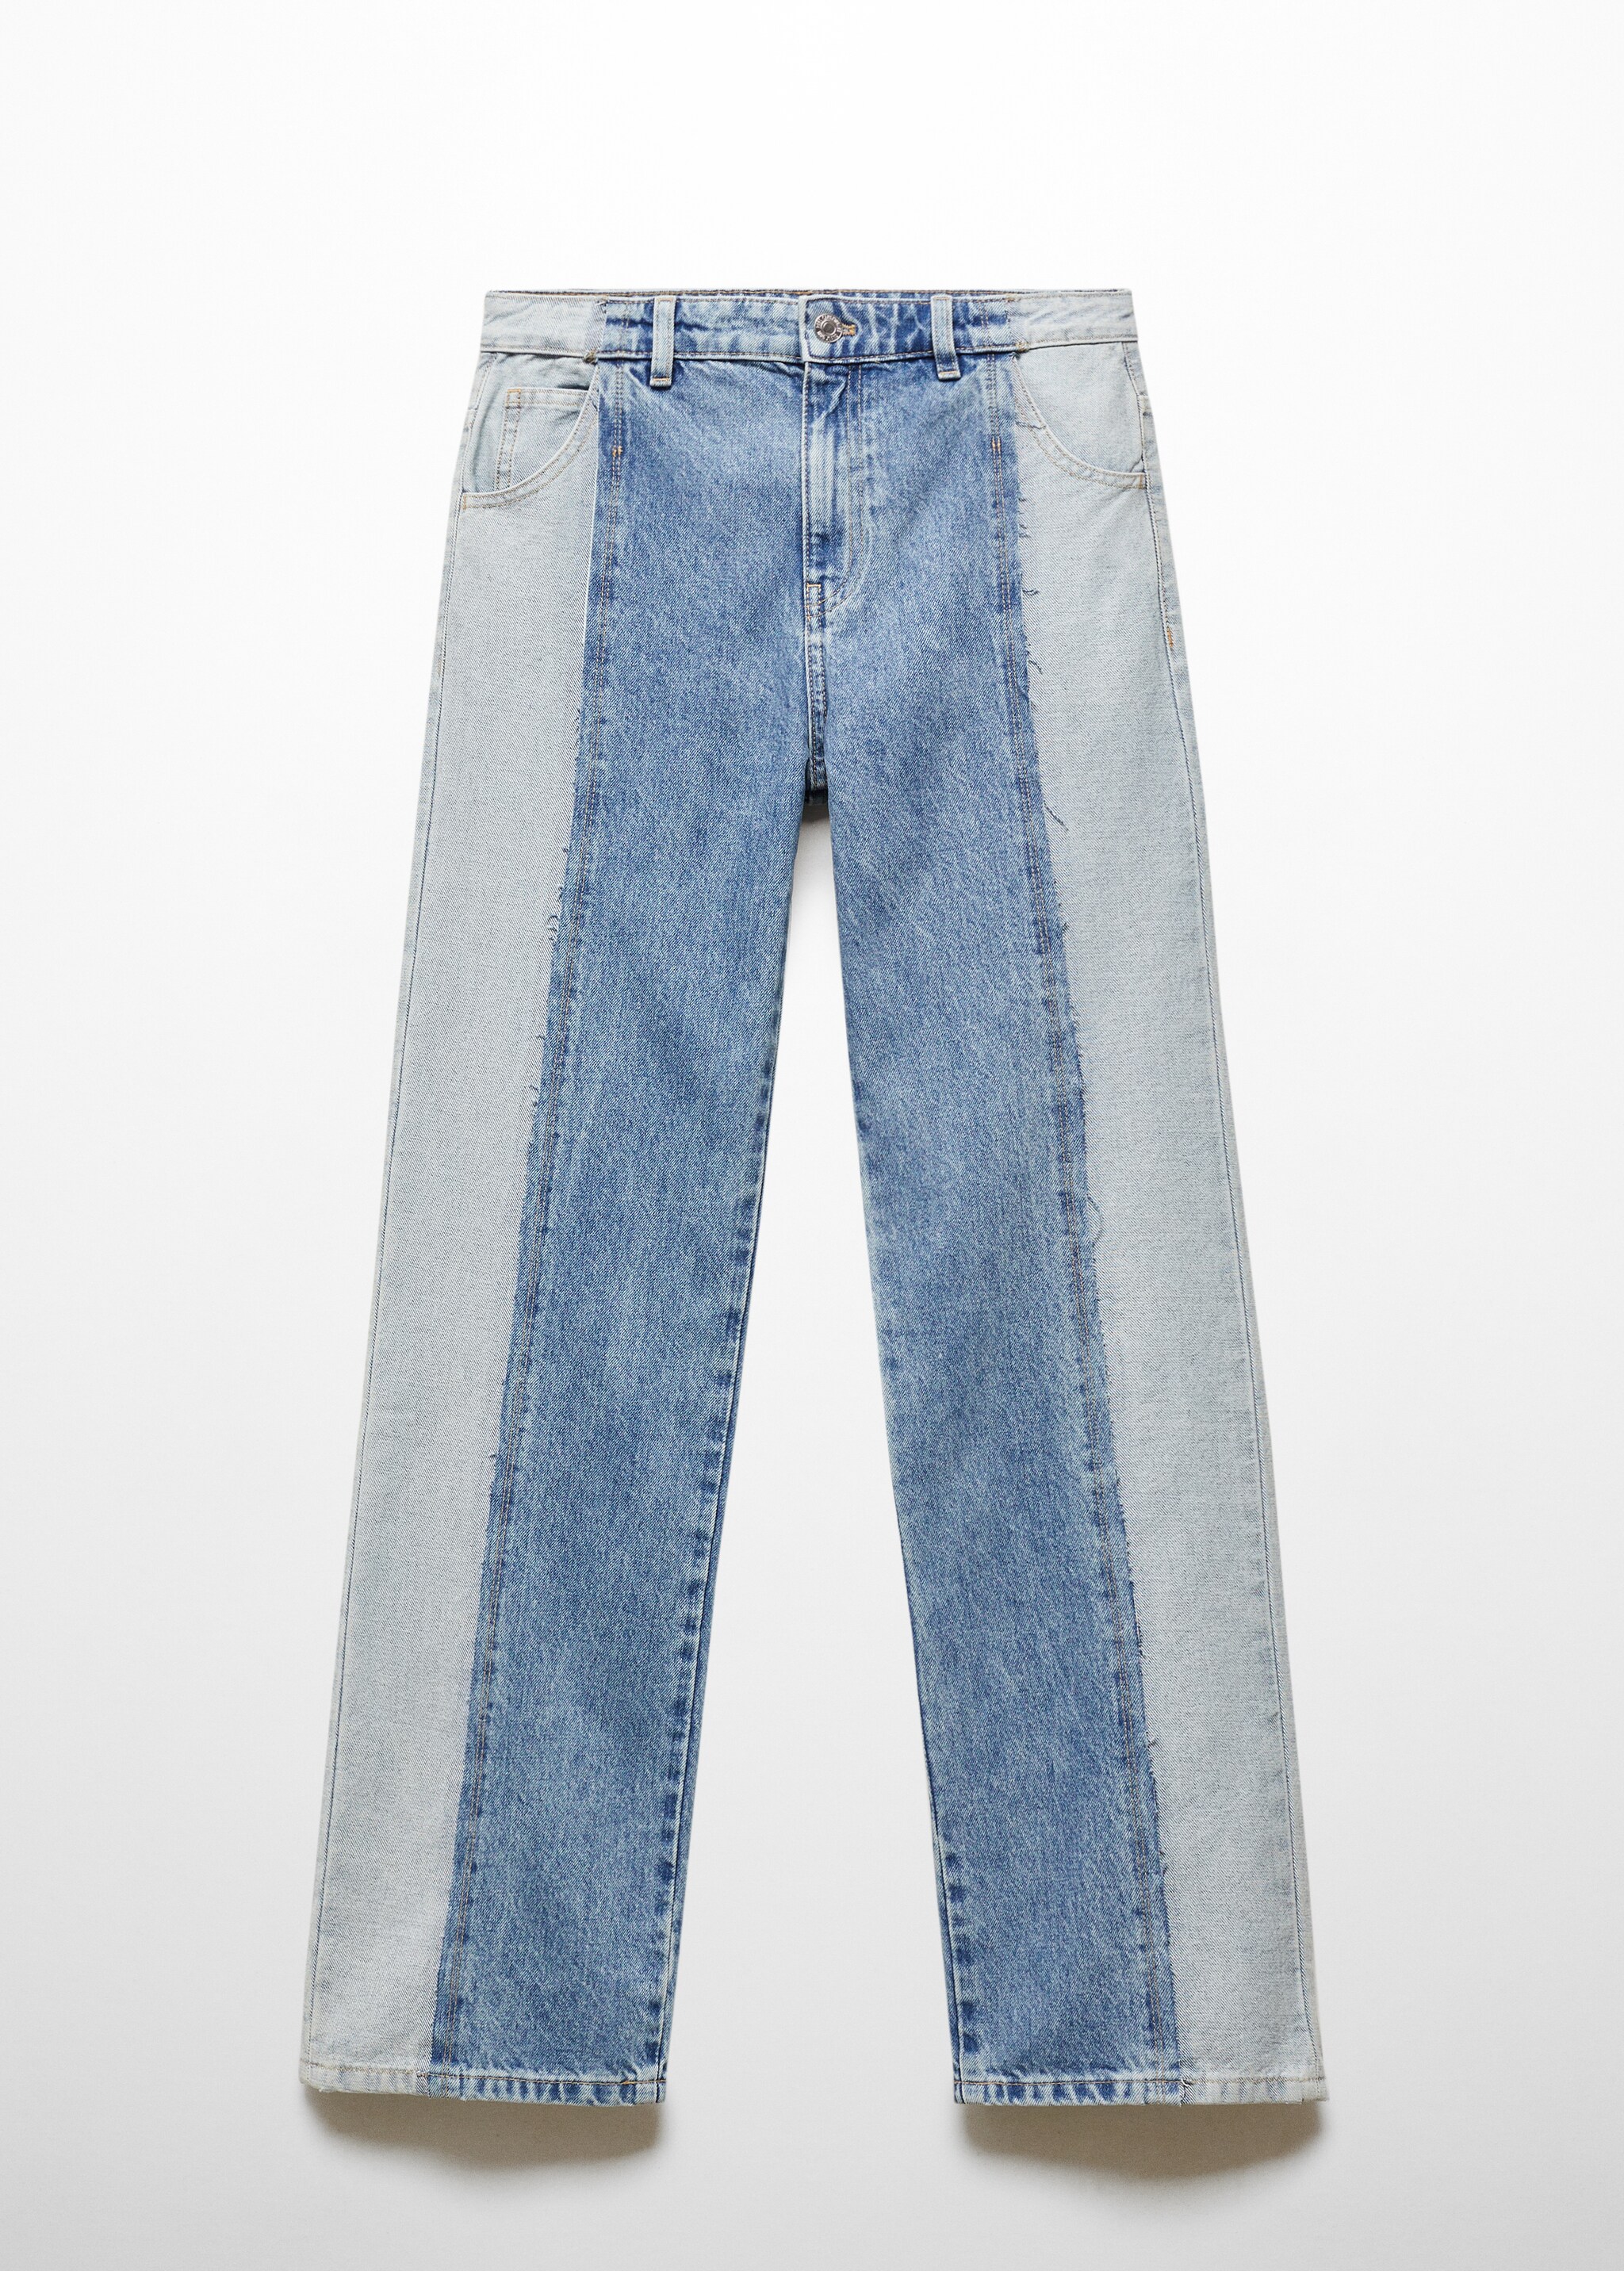 Прямые двухцветные джинсы - Изделие без модели